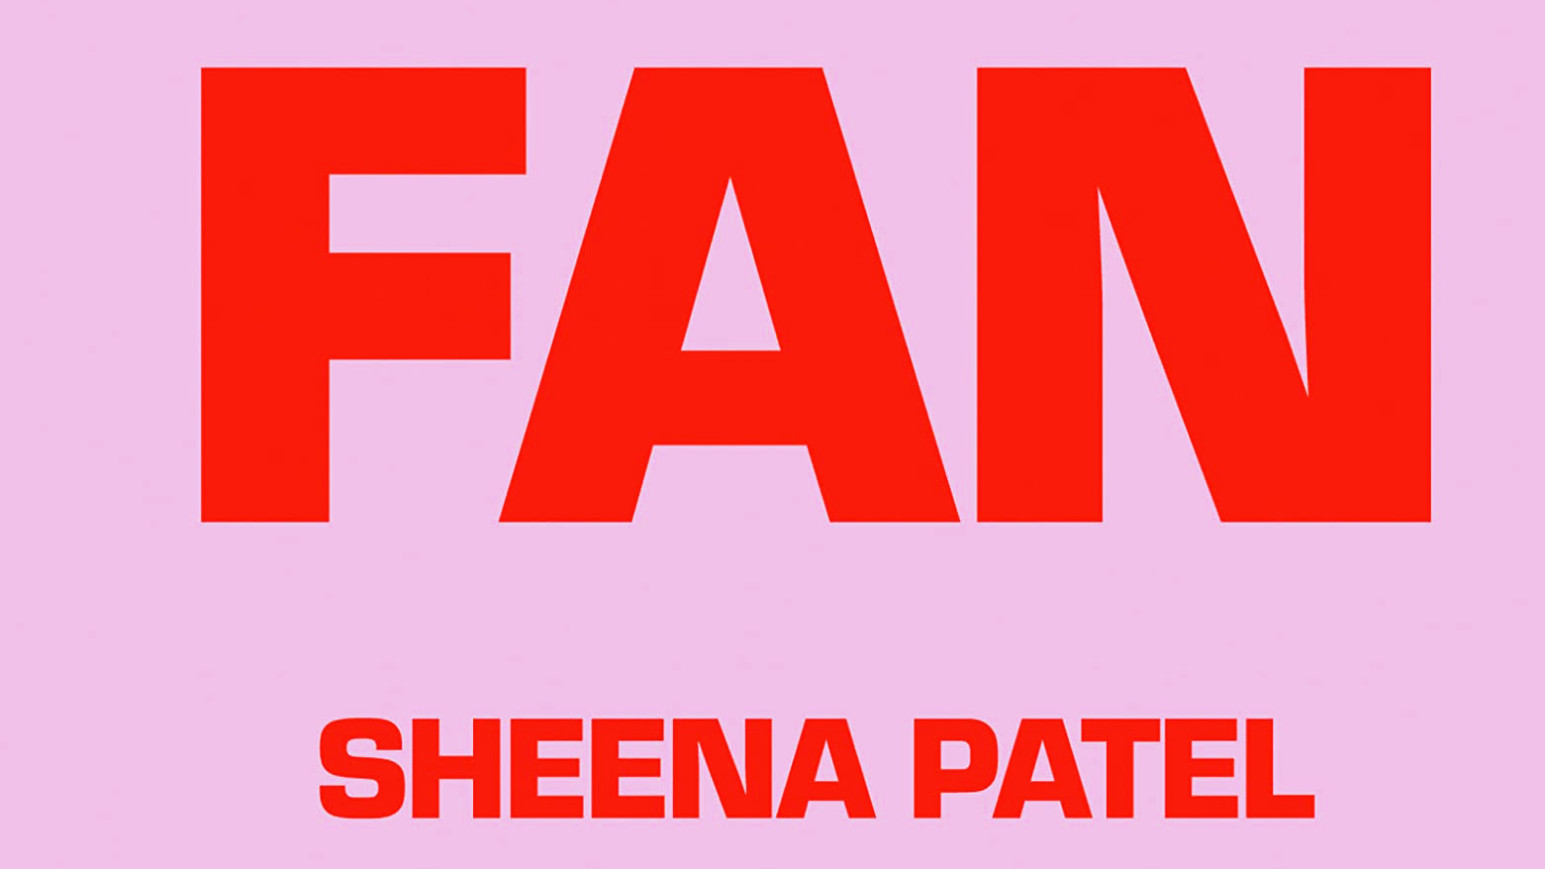 „I’m a Fan“ von Sheena Patel ist bei hanserblau erschienen (©hanserblau)